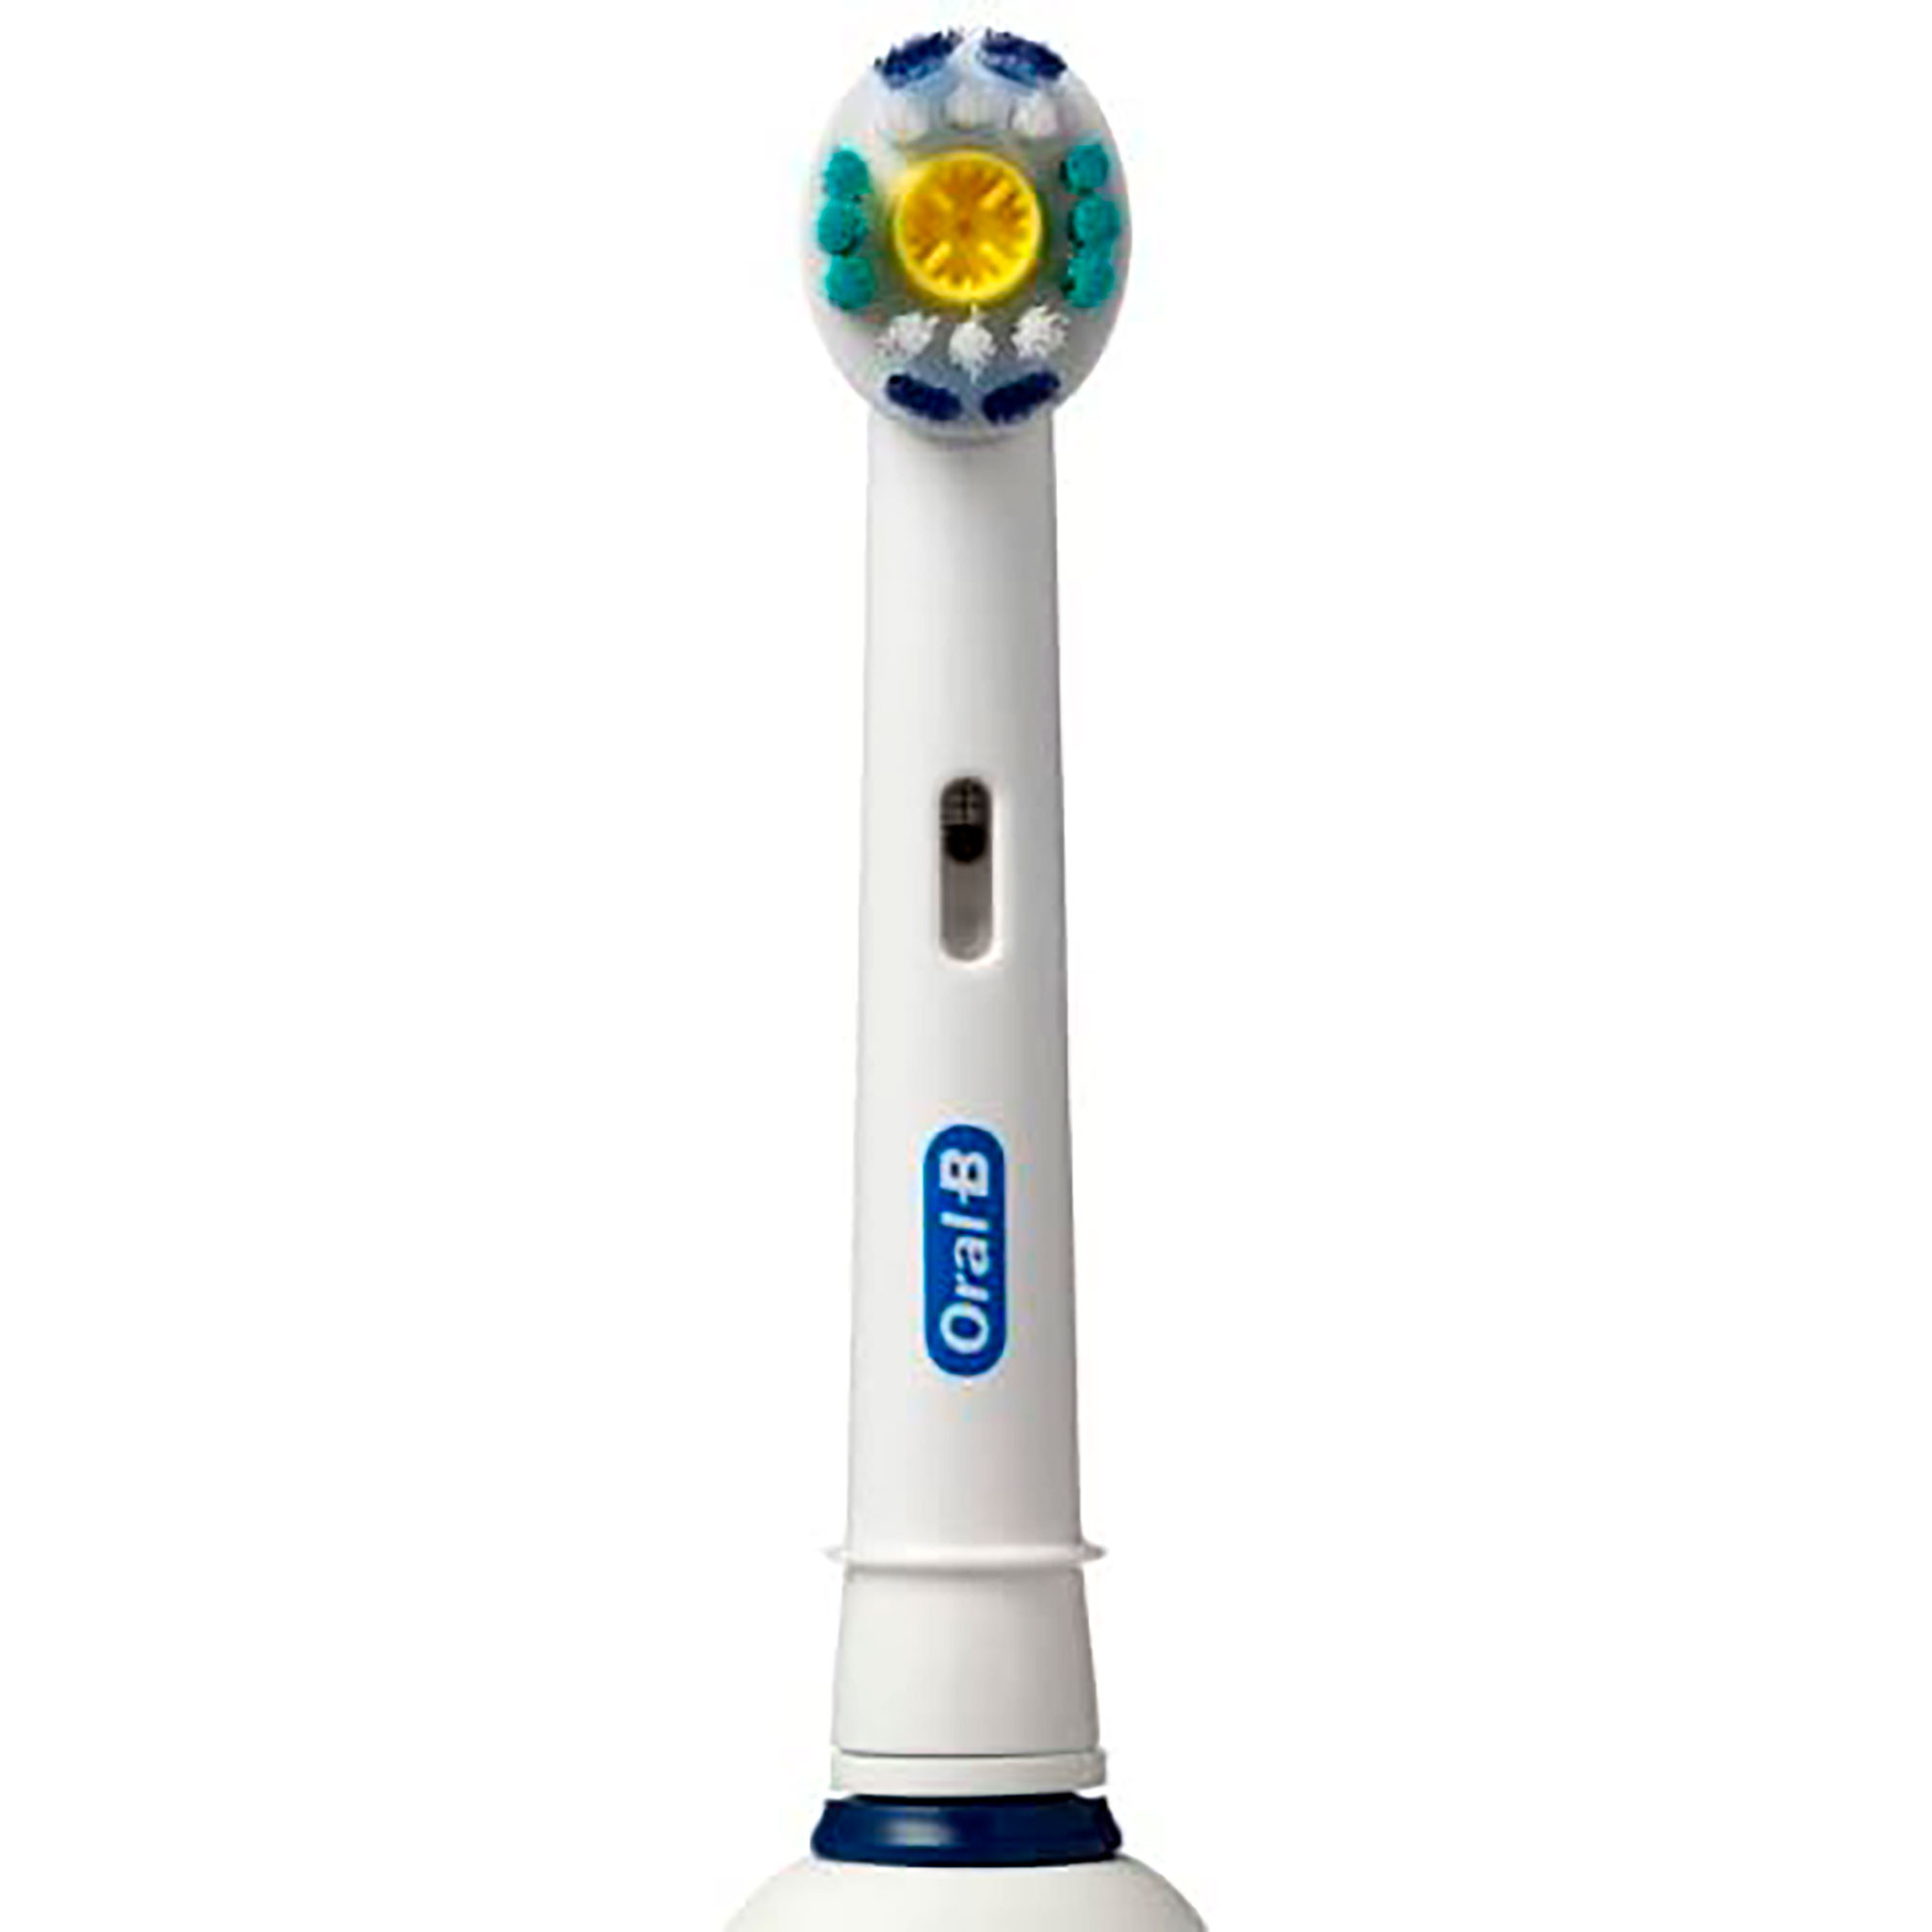 Cabezales de cepillo eléctrico Oral-B de repuesto